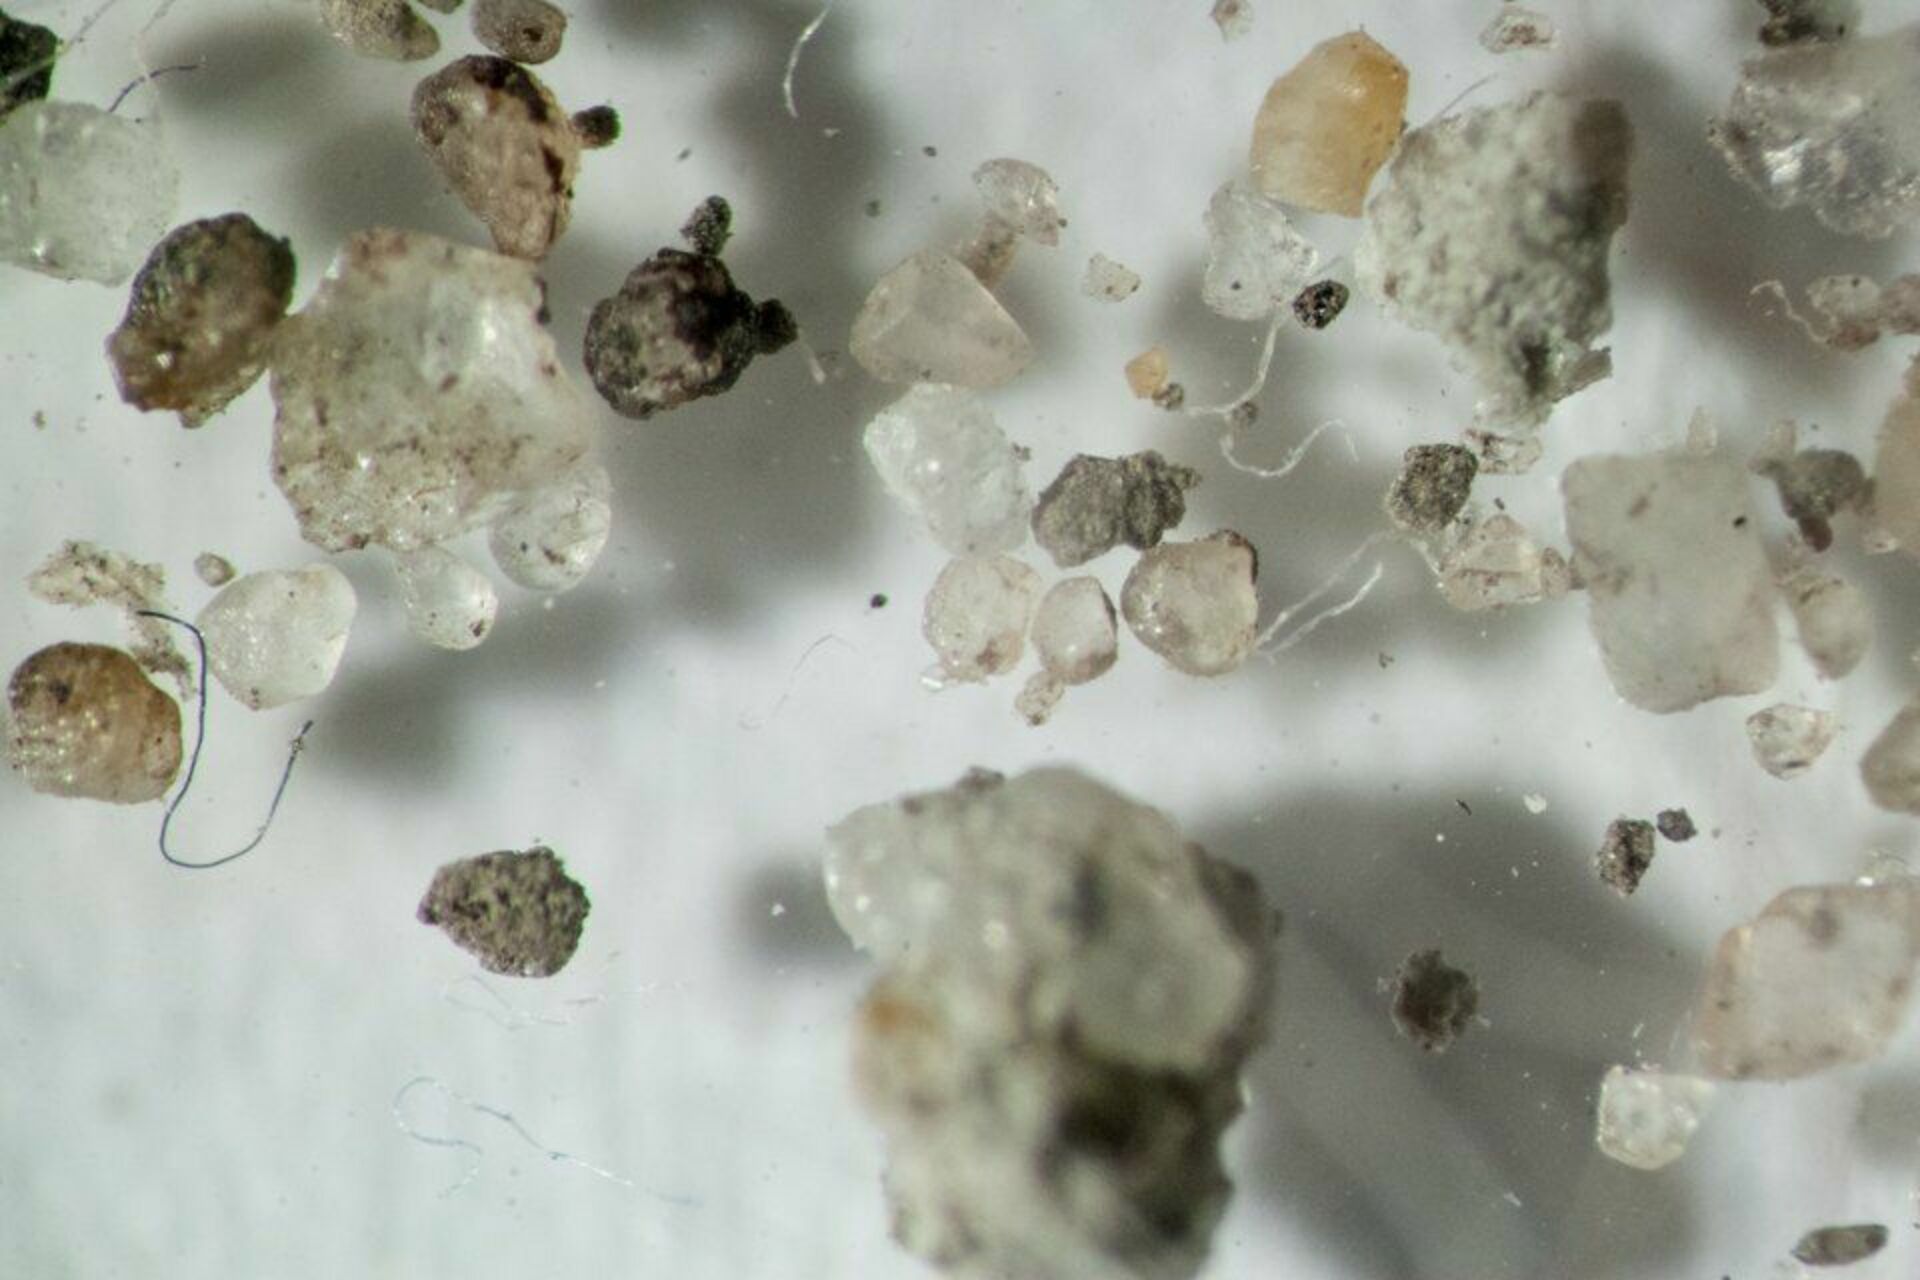 Б г пыль. Домашняя пыль под микроскопом. Частички пыли под микроскопом. Мусор под микроскопом. Пыль увеличенная под микроскопом.